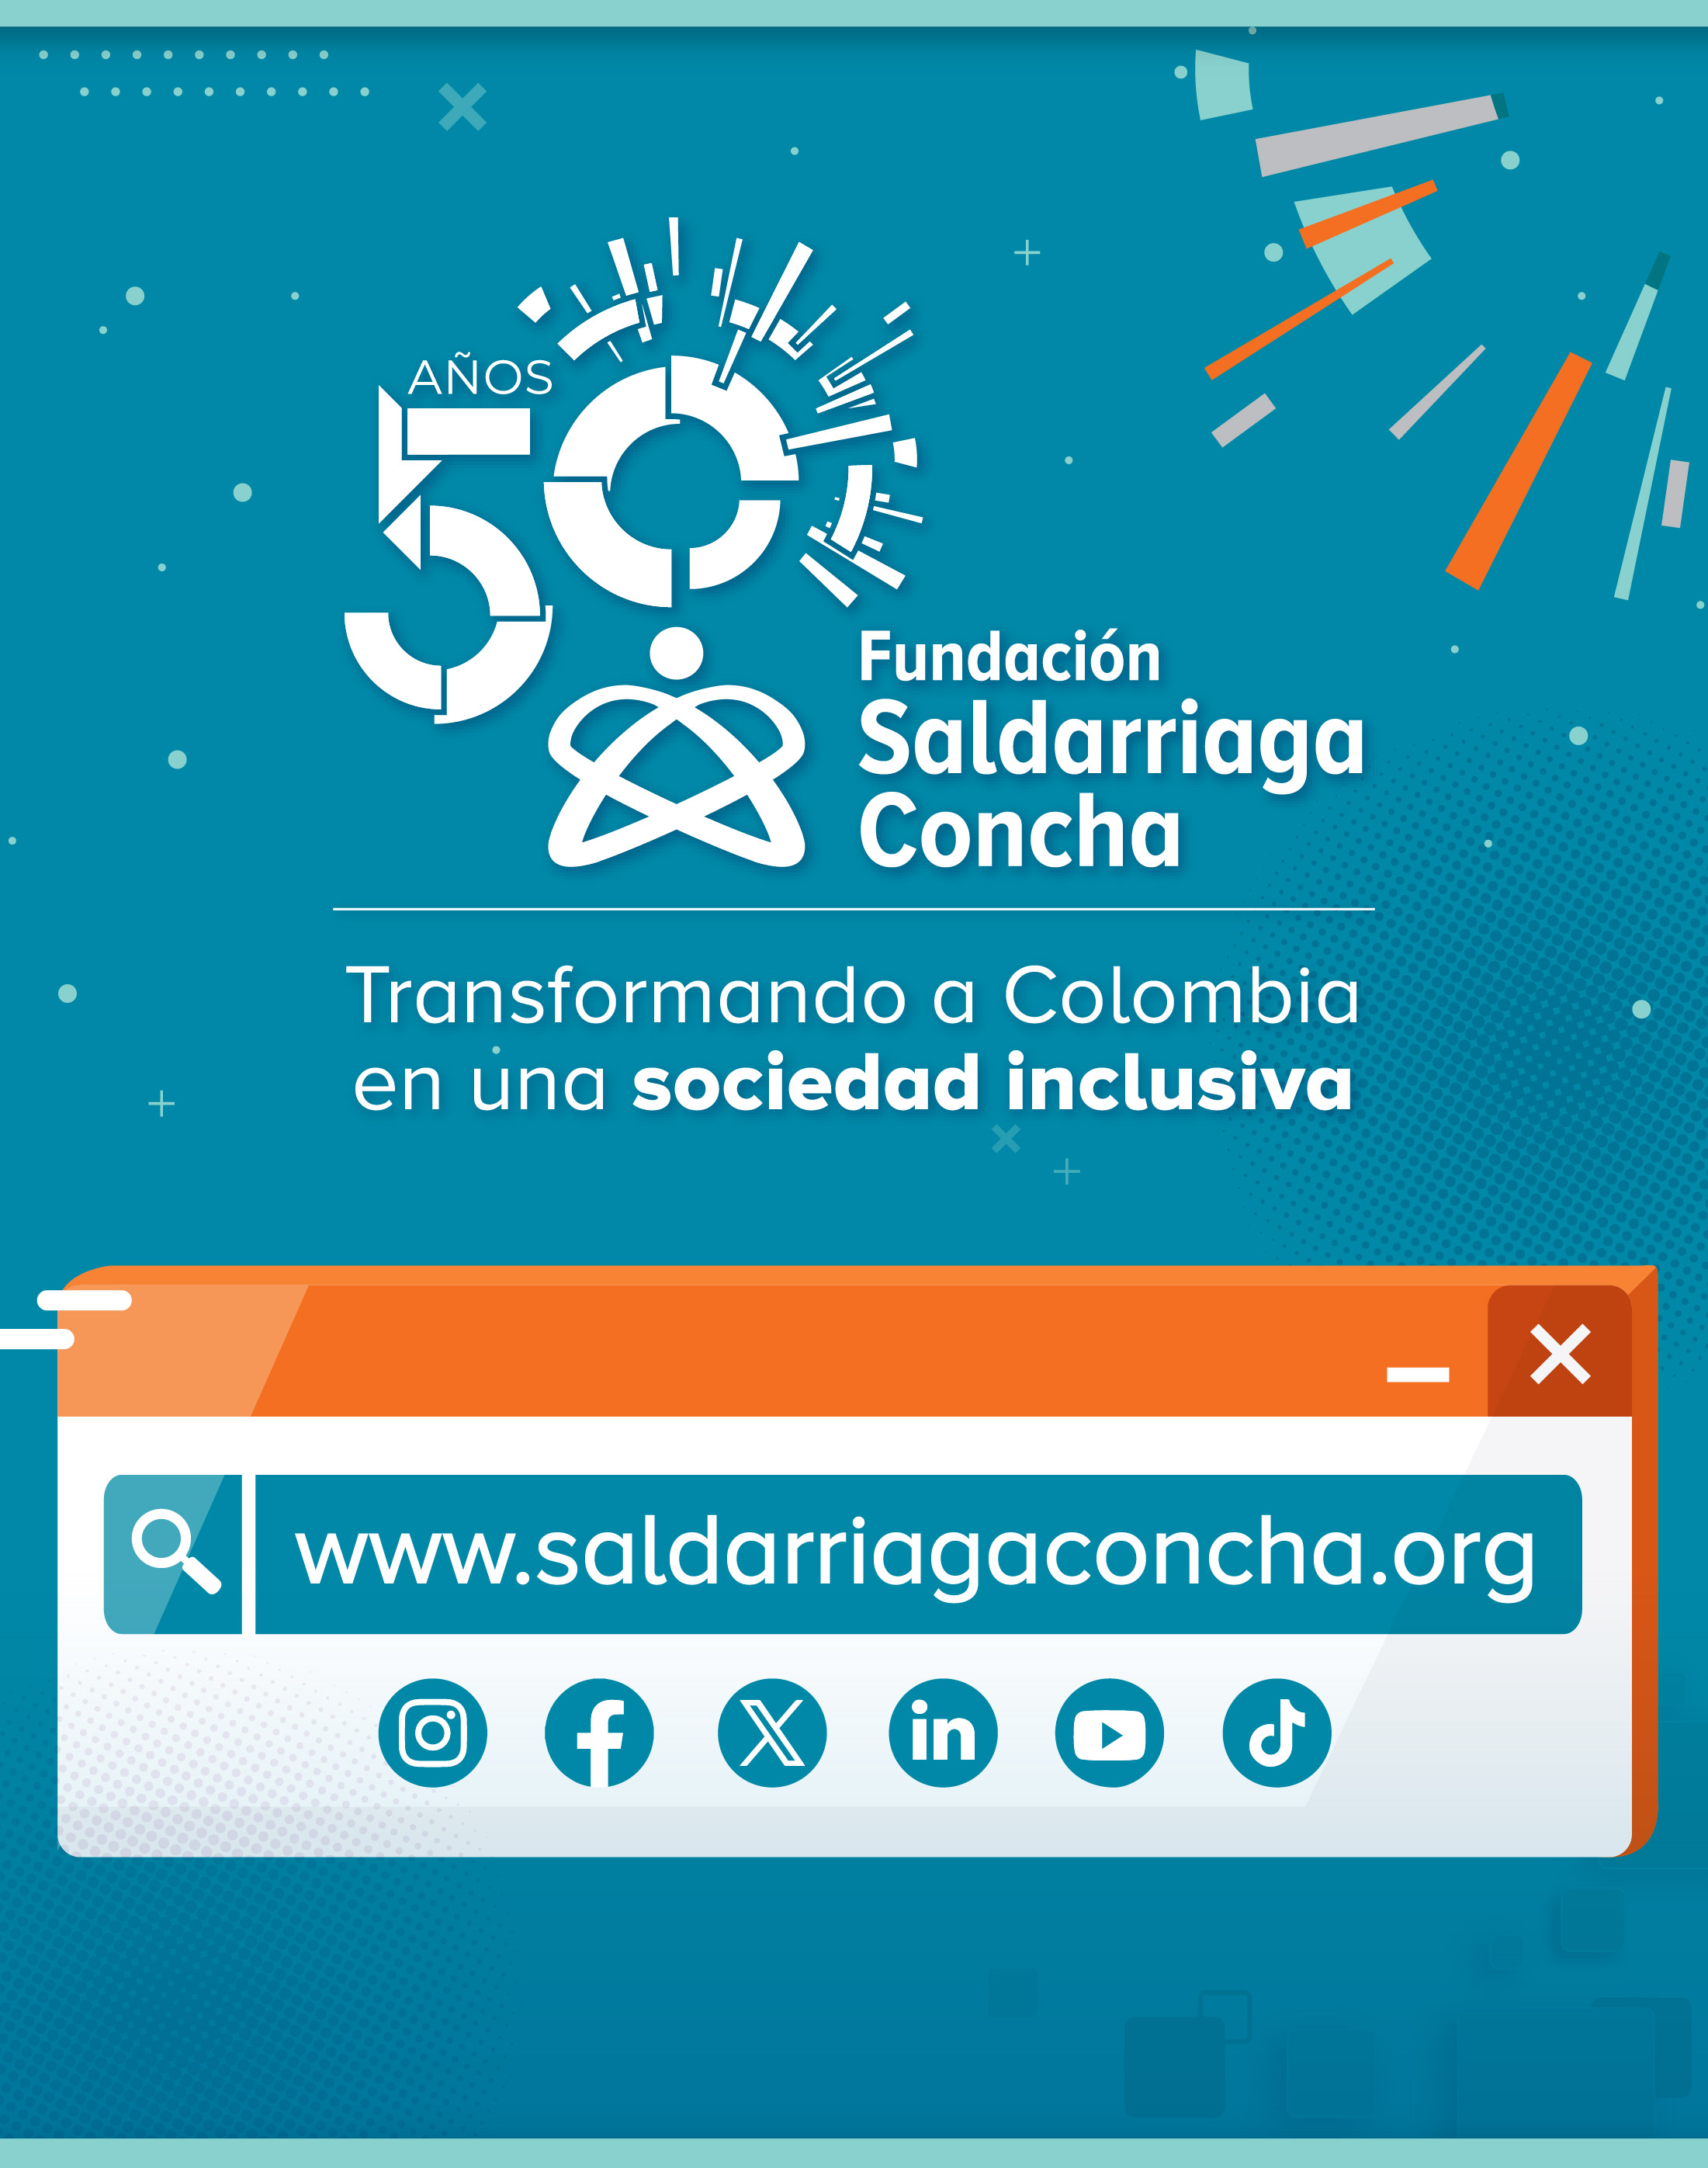 50 años de Fundación Saldarriaga Concha transformando a Colombia en una comunidad inclusiva